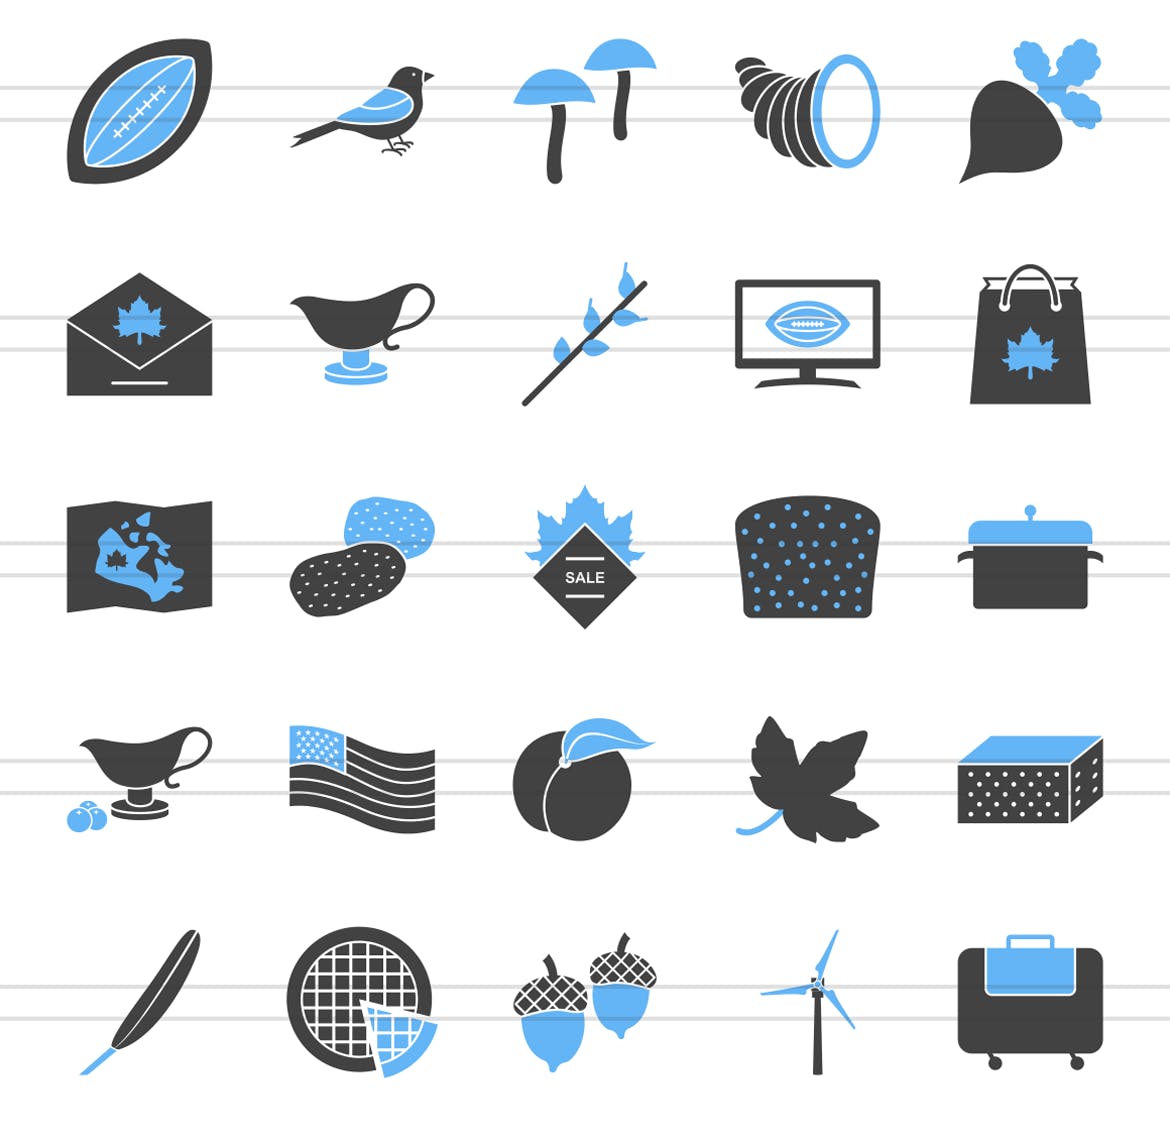 50枚感恩节主题蓝黑配色矢量填充图标 50 Thanksgiving Filled Blue & Black Icons插图2